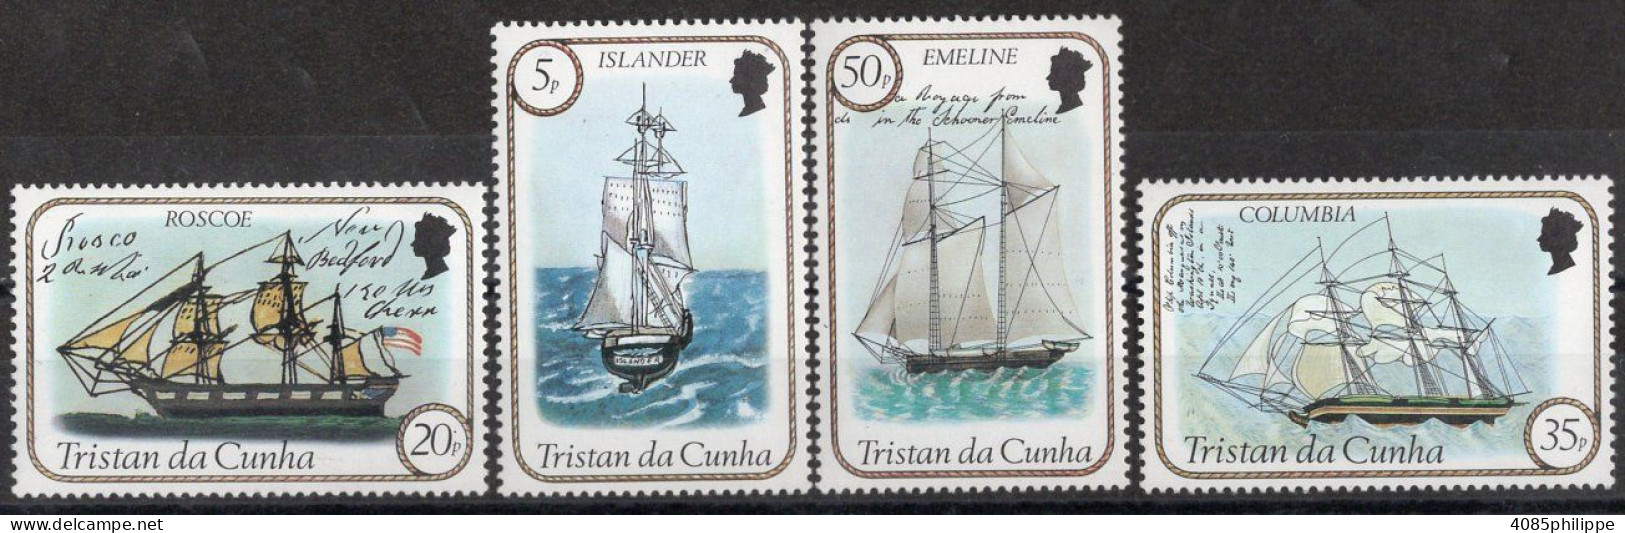 TRISTAN DA CUNHA  Timbres-Poste N°323* à 326* Neufs Charnières TB Cote : 5.00€ - Tristan Da Cunha